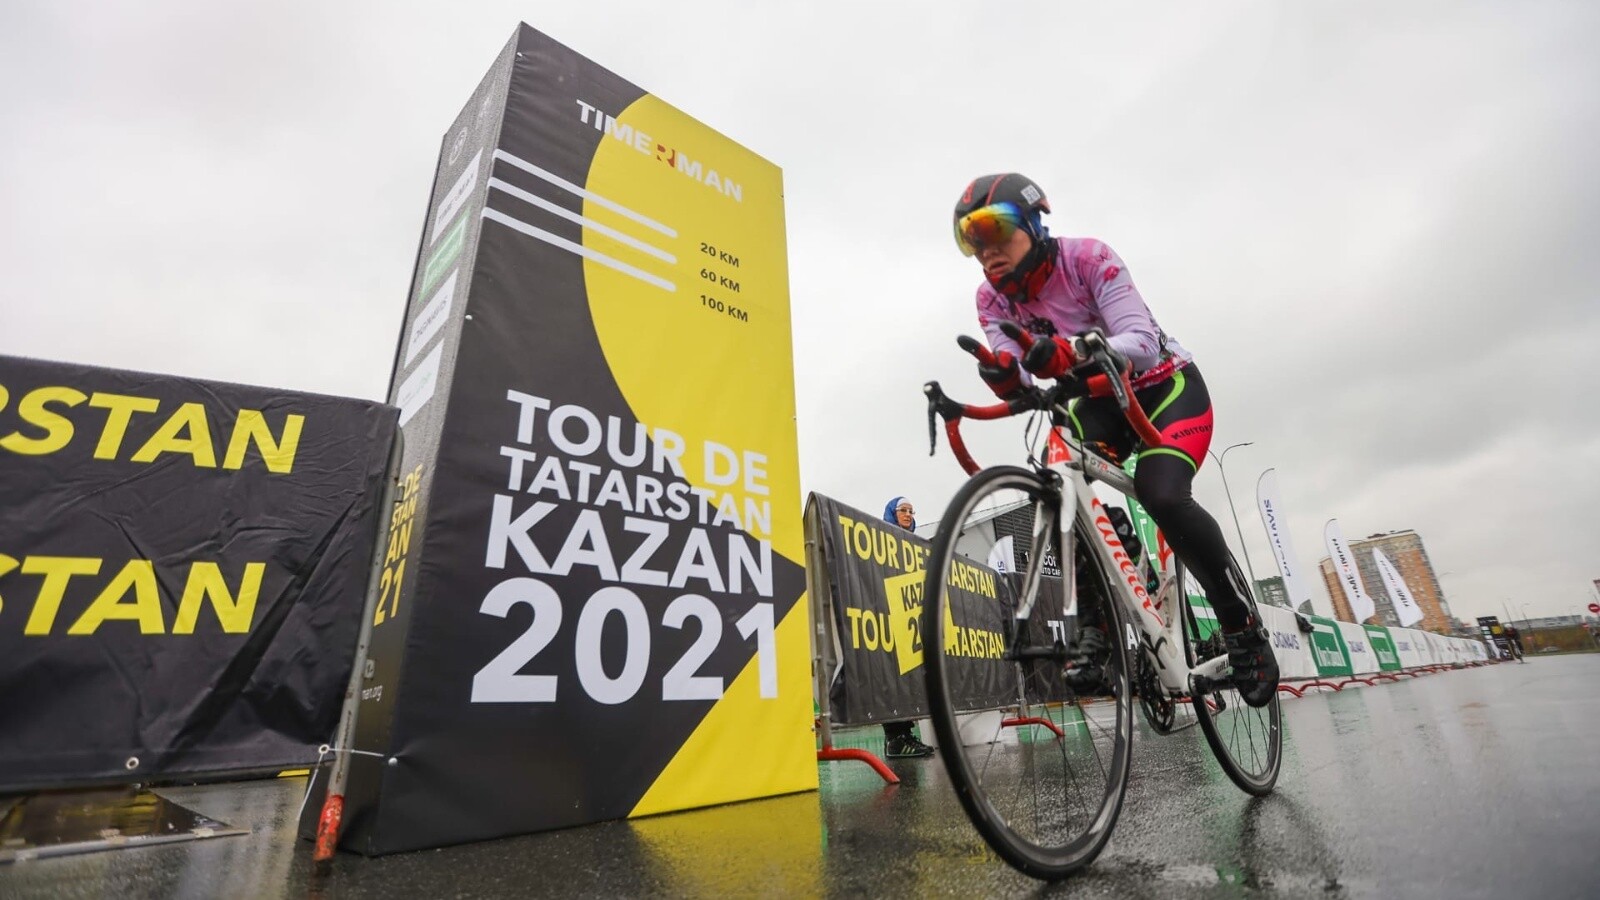 Более 500 спортсменов приняли участие в велогонке Tour de Tatarstan Kazan 2021